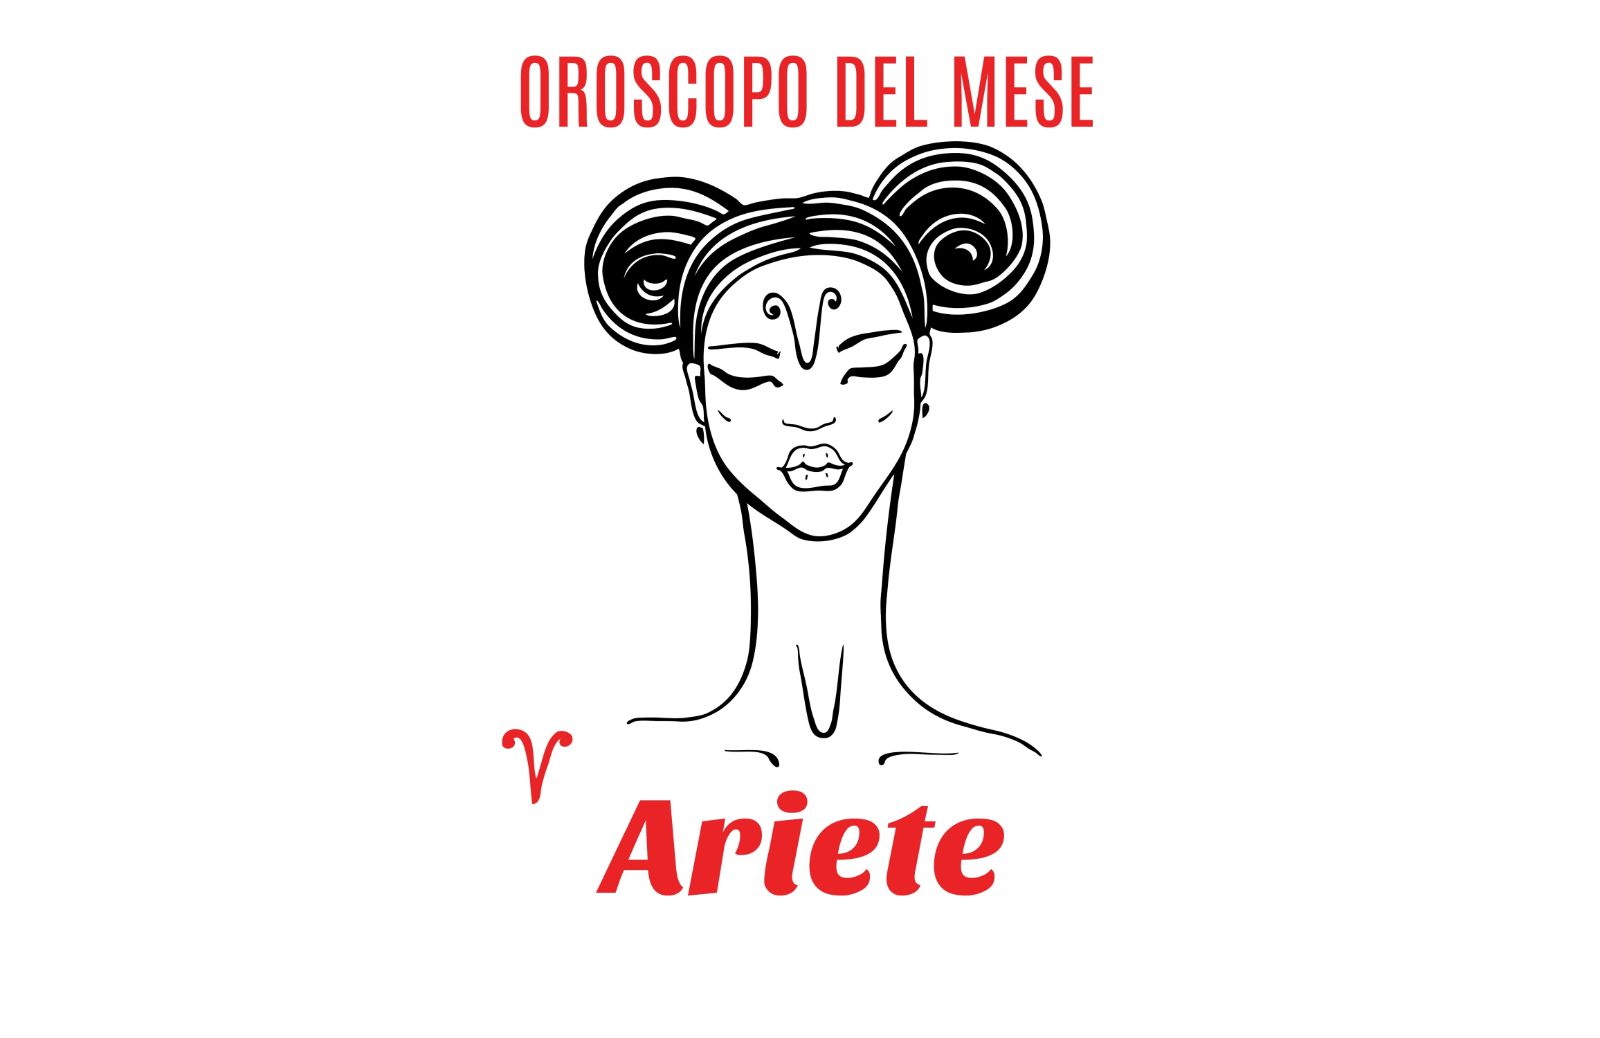 Oroscopo del mese: Ariete - agosto 2018